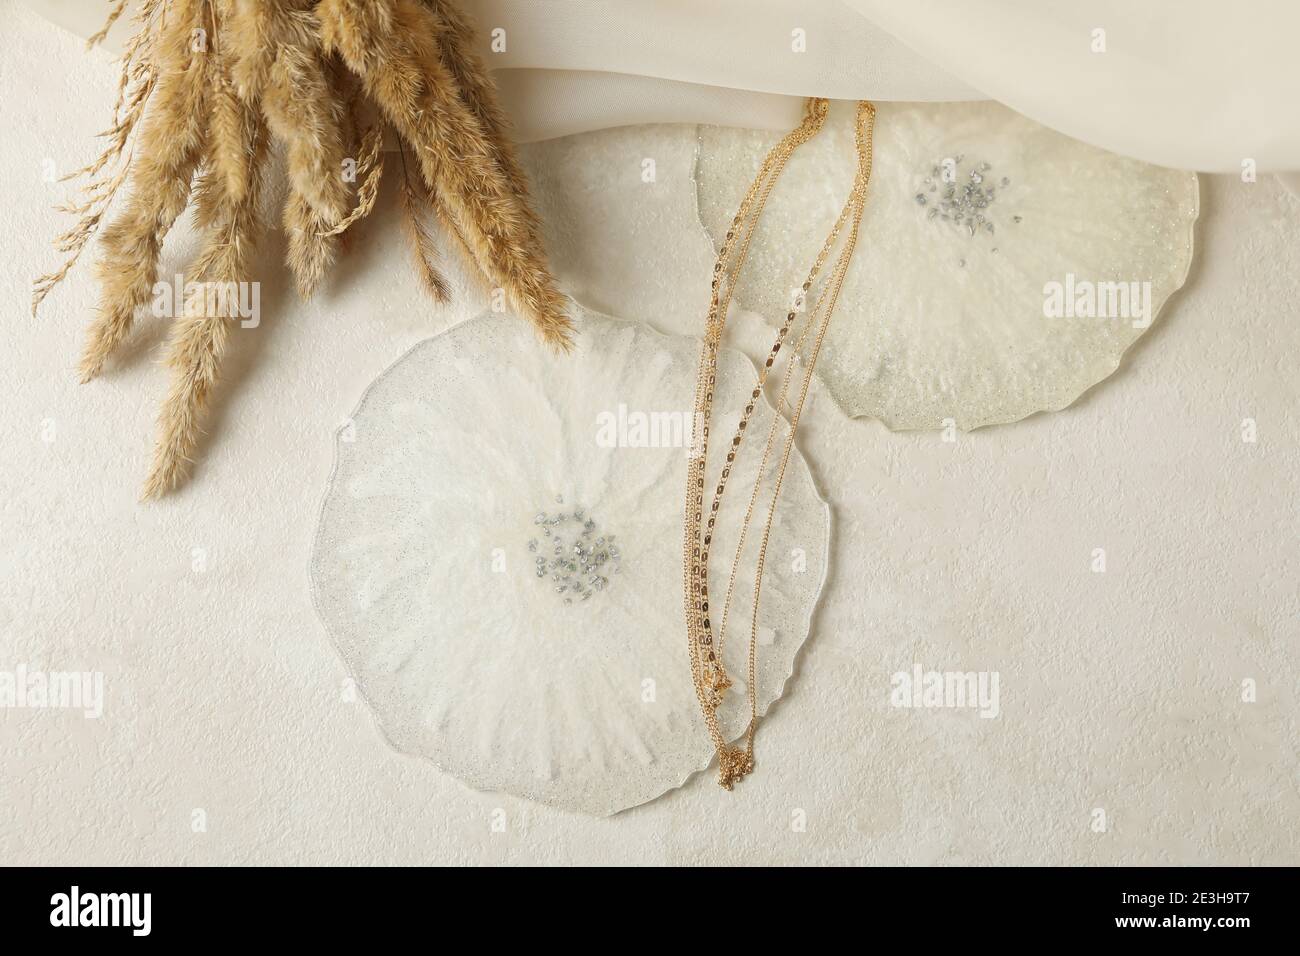 Résine époxy, tissu, chaîne dorée et fleurs de champ sur fond blanc Banque D'Images